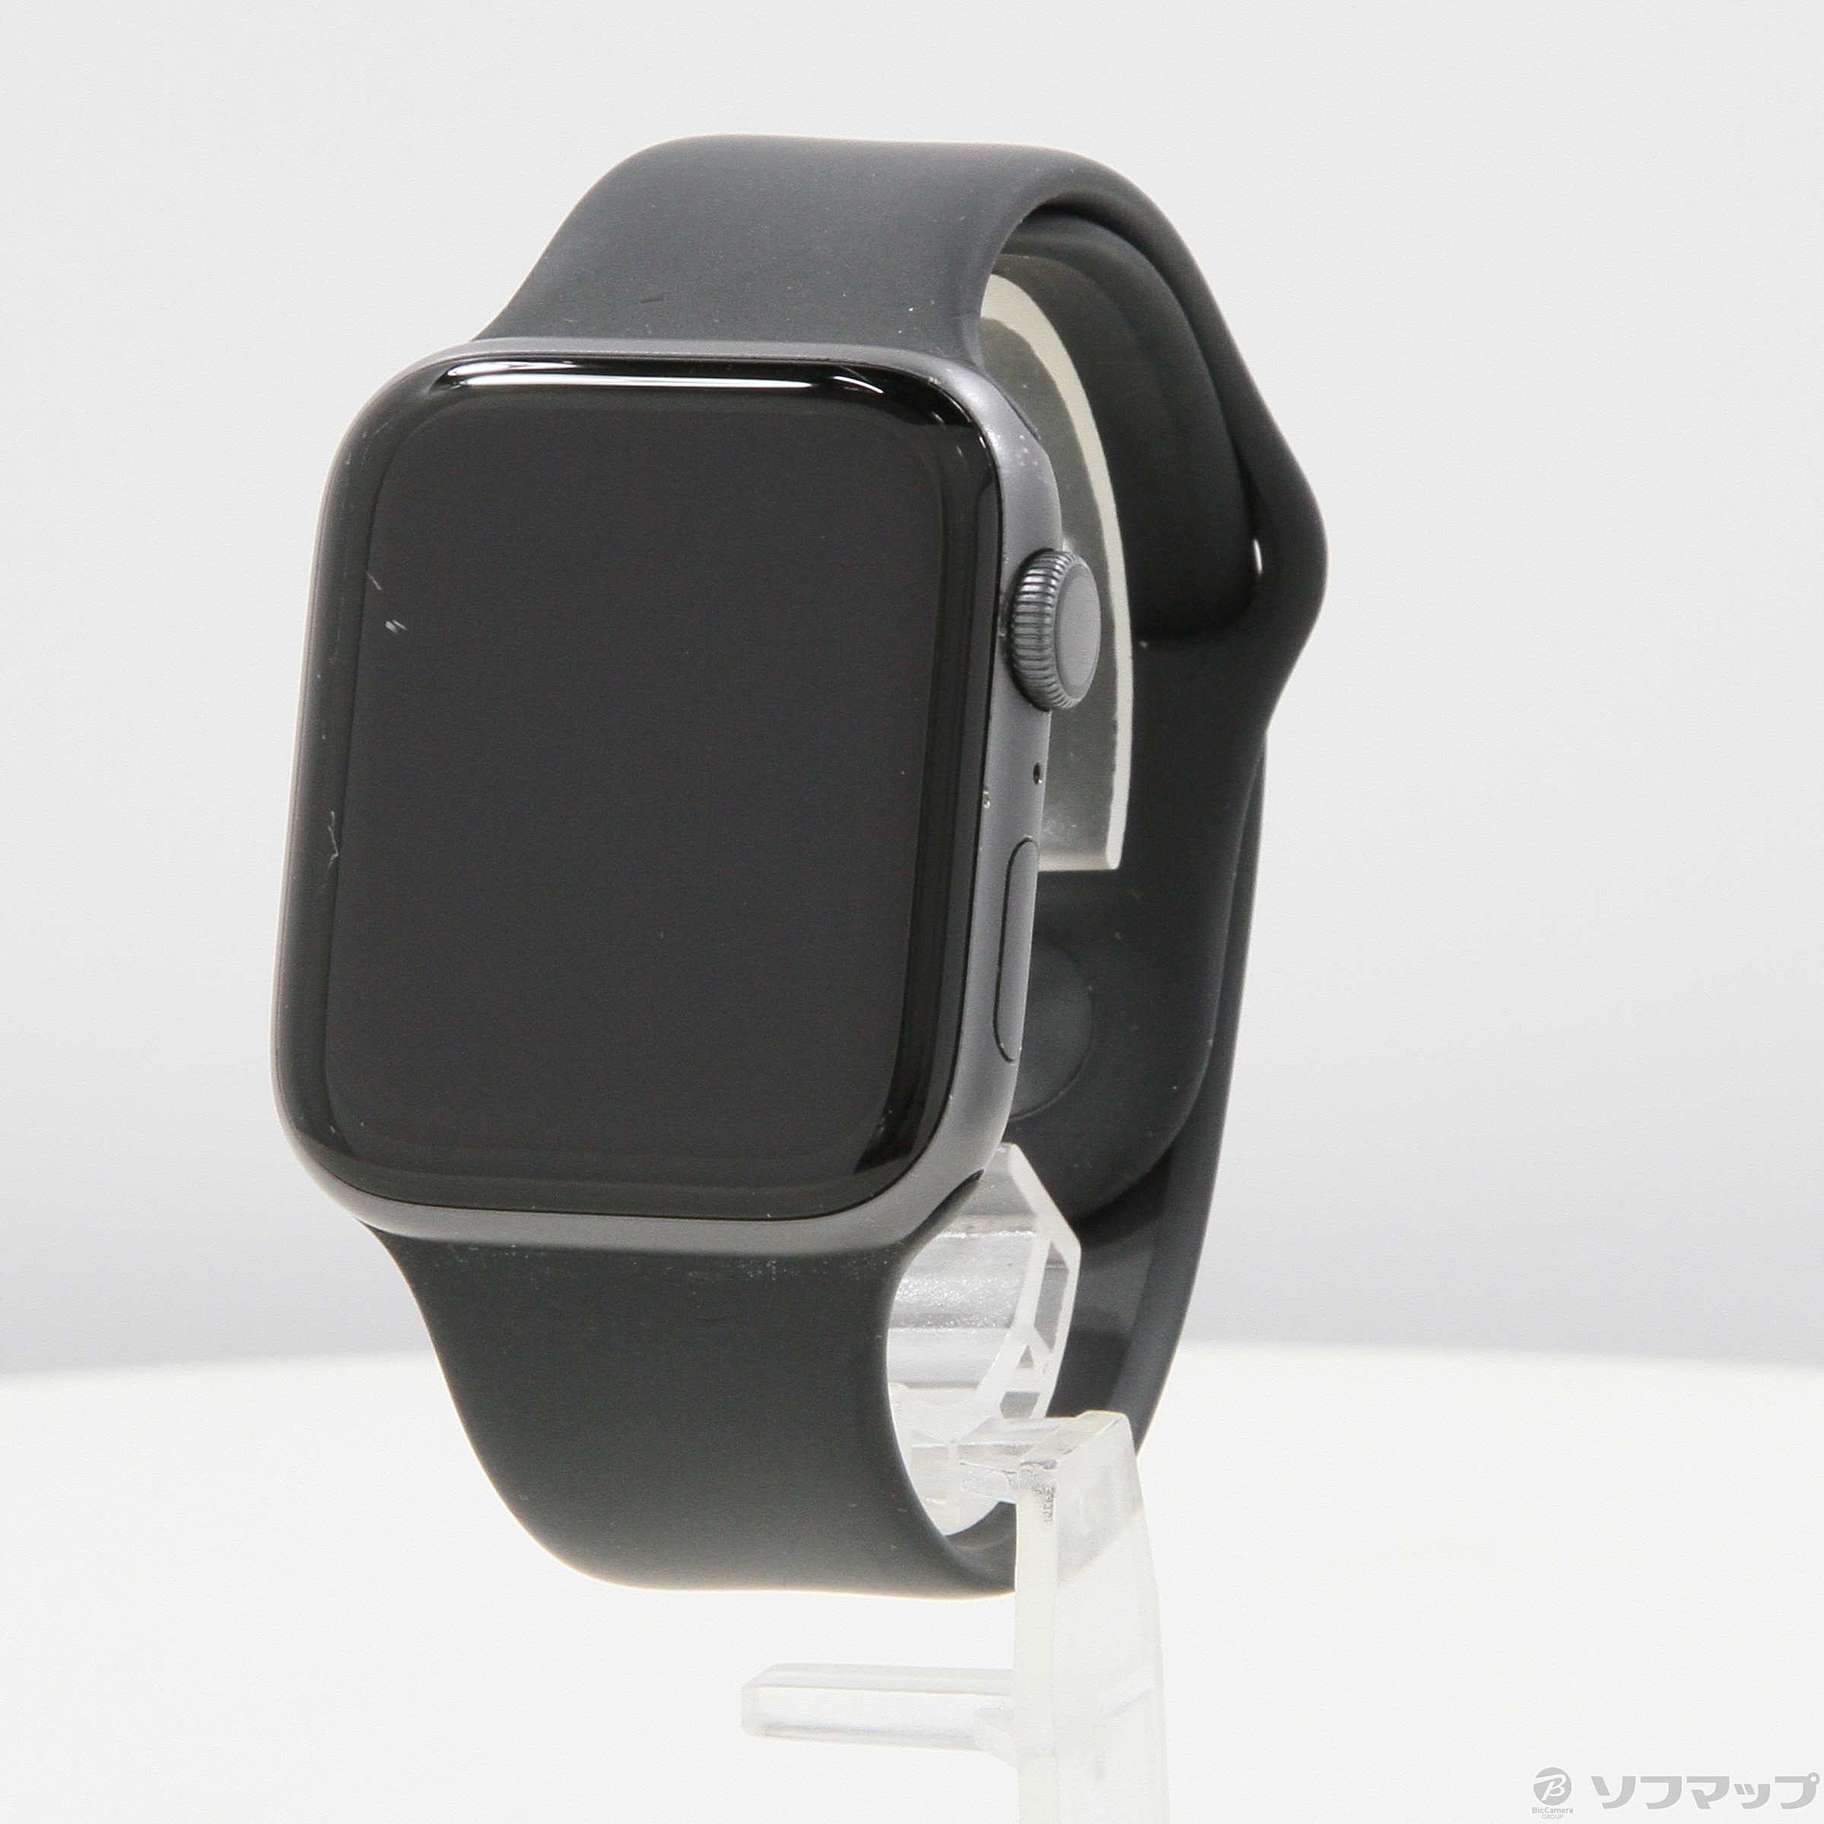 〔中古品〕 Apple Watch Series 4 GPS 44mm スペースグレイアルミニウムケース ブラックスポーツバンド